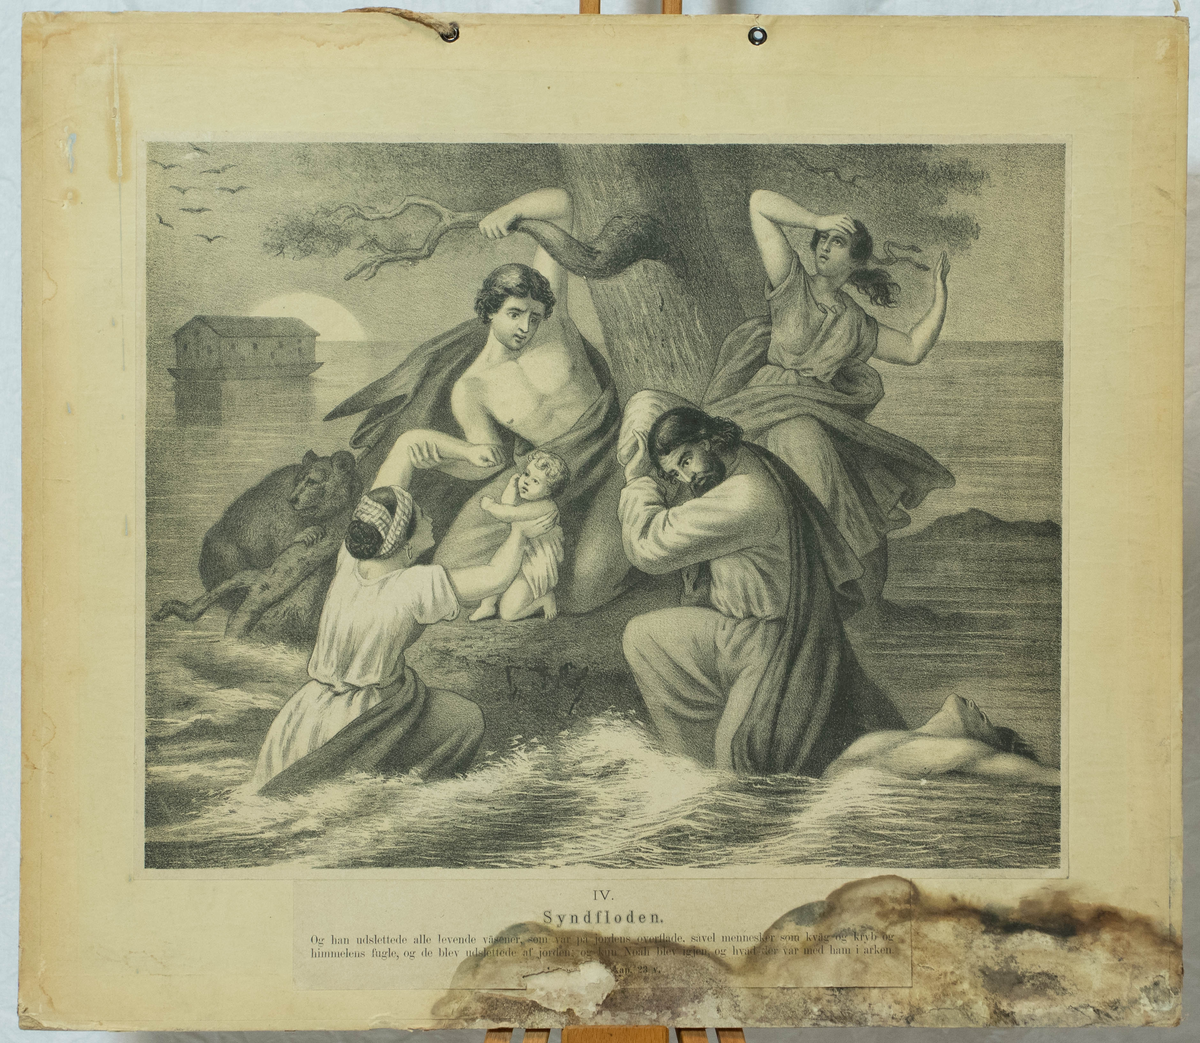 Fremstilling av syndefloden. Fire person og et spedbarn samlet rundt et tre omringet av vann. I bakgrunnen er Noas ark synlig.